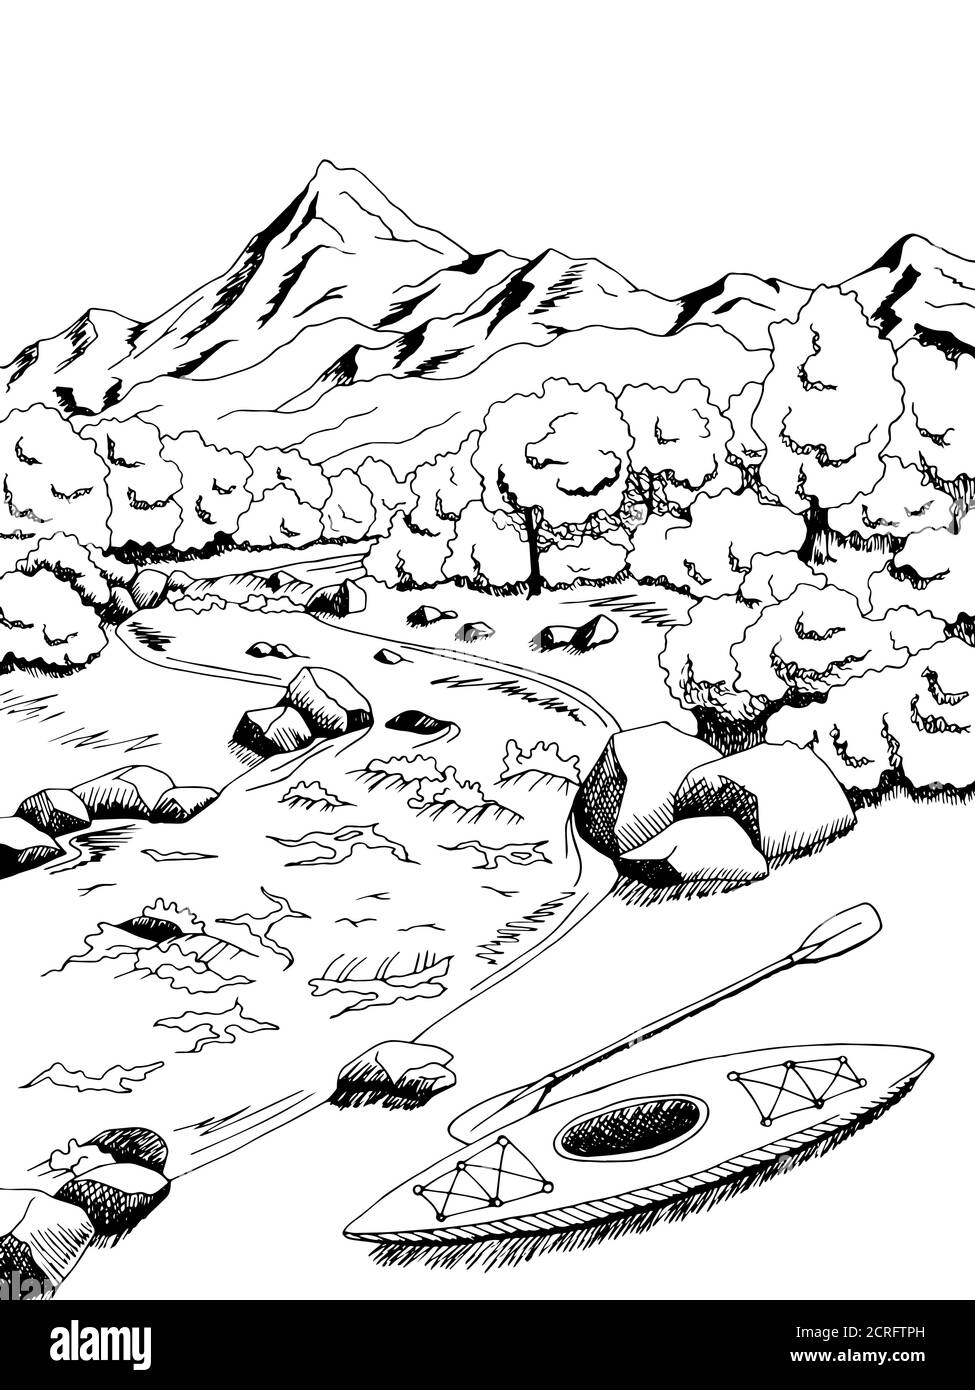 Mountain River kayak bateau graphique art noir blanc paysage illustration vecteur Illustration de Vecteur